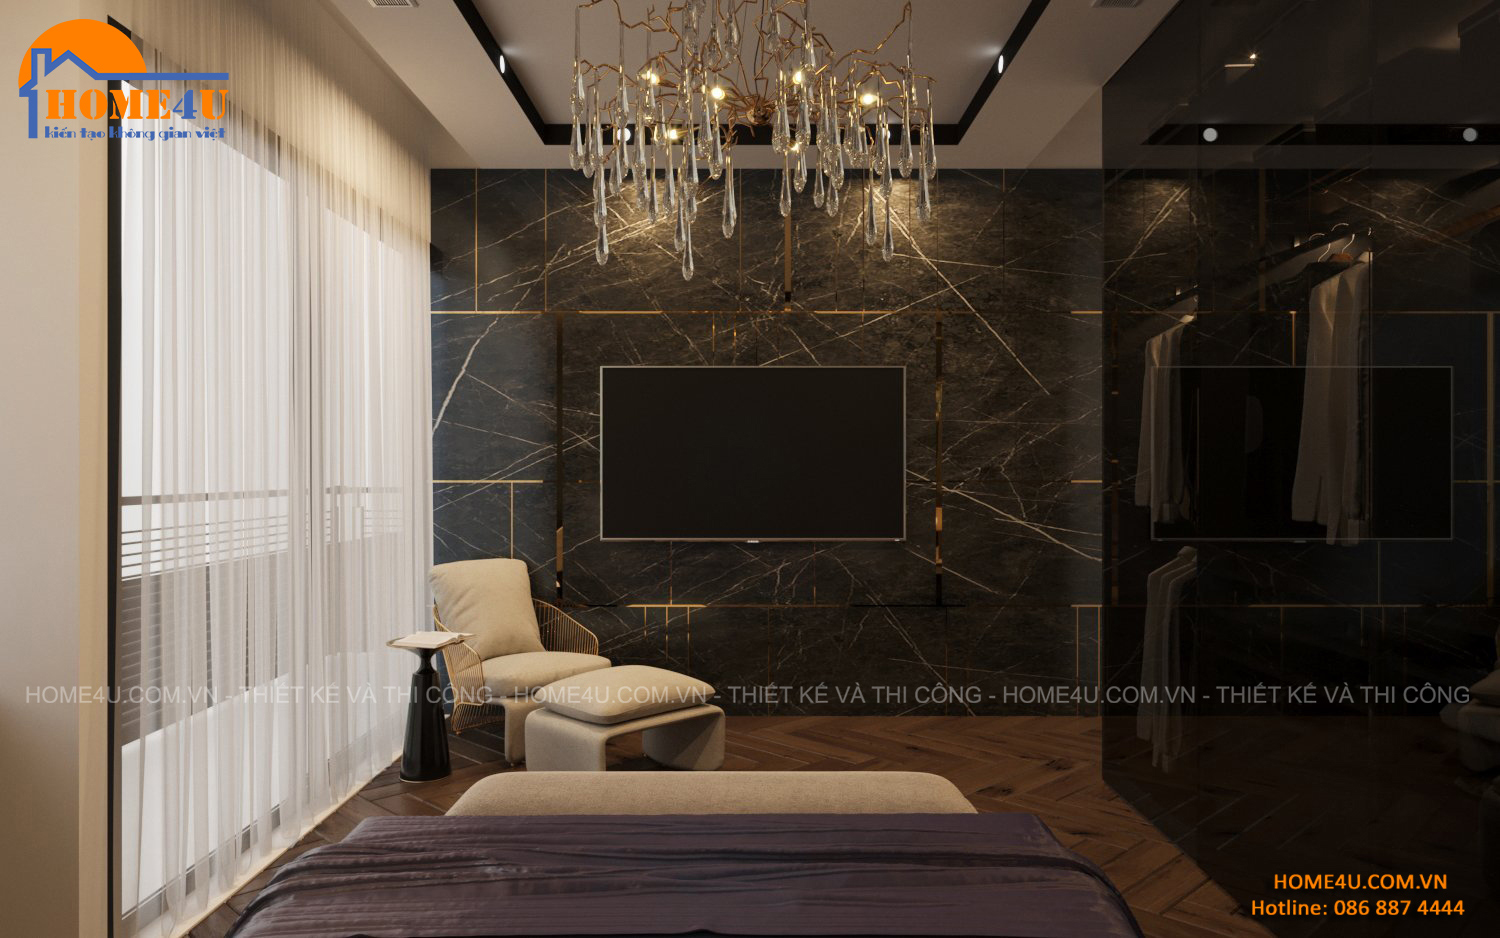 Thiết kế nội thất nhà phố 7 tầng hiện đại anh Tuấn - NTNP2013 20